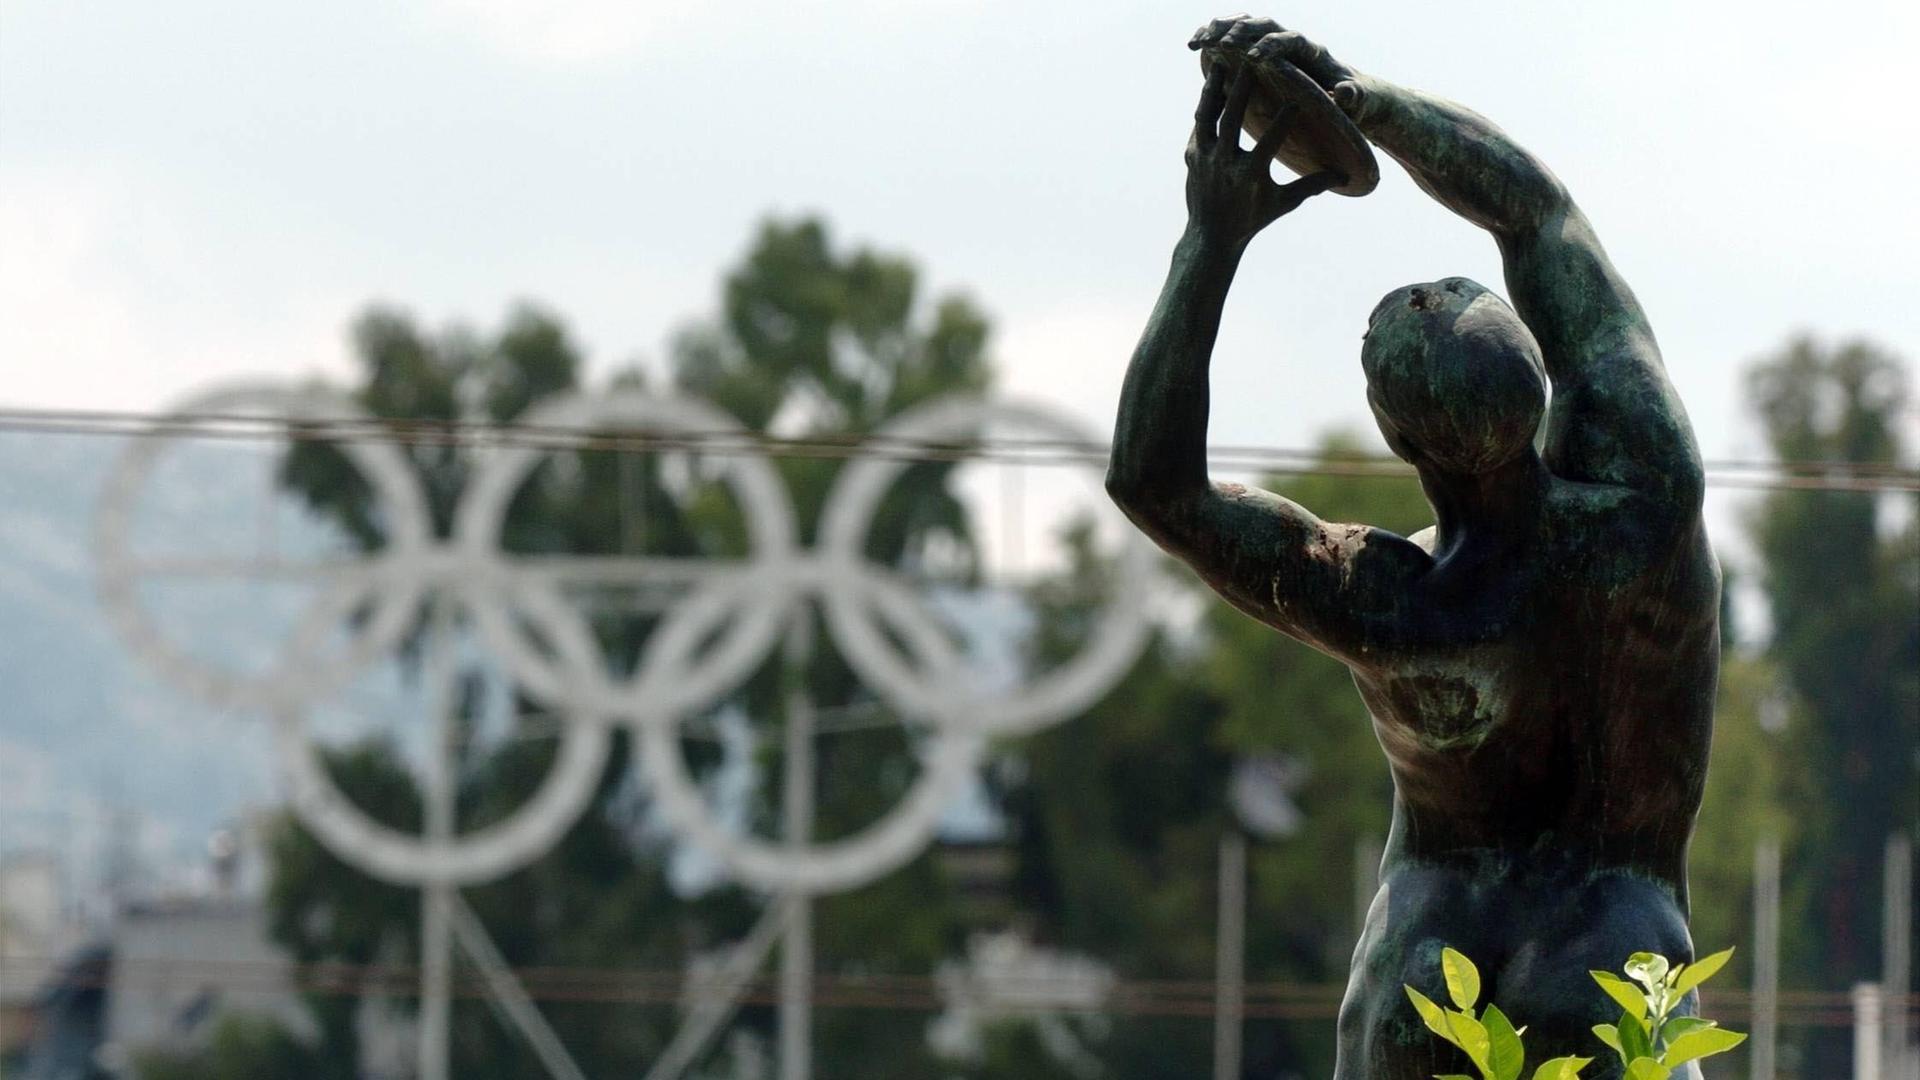 Eine typische griechische Statue eines Diskuswerfers ist im Vordergrund zu sehen. Im Bildhintergrund sind die fünf olympischen Ringe zu erkennen. Die Statue steht vor dem antike Olympiastadion in Athen.